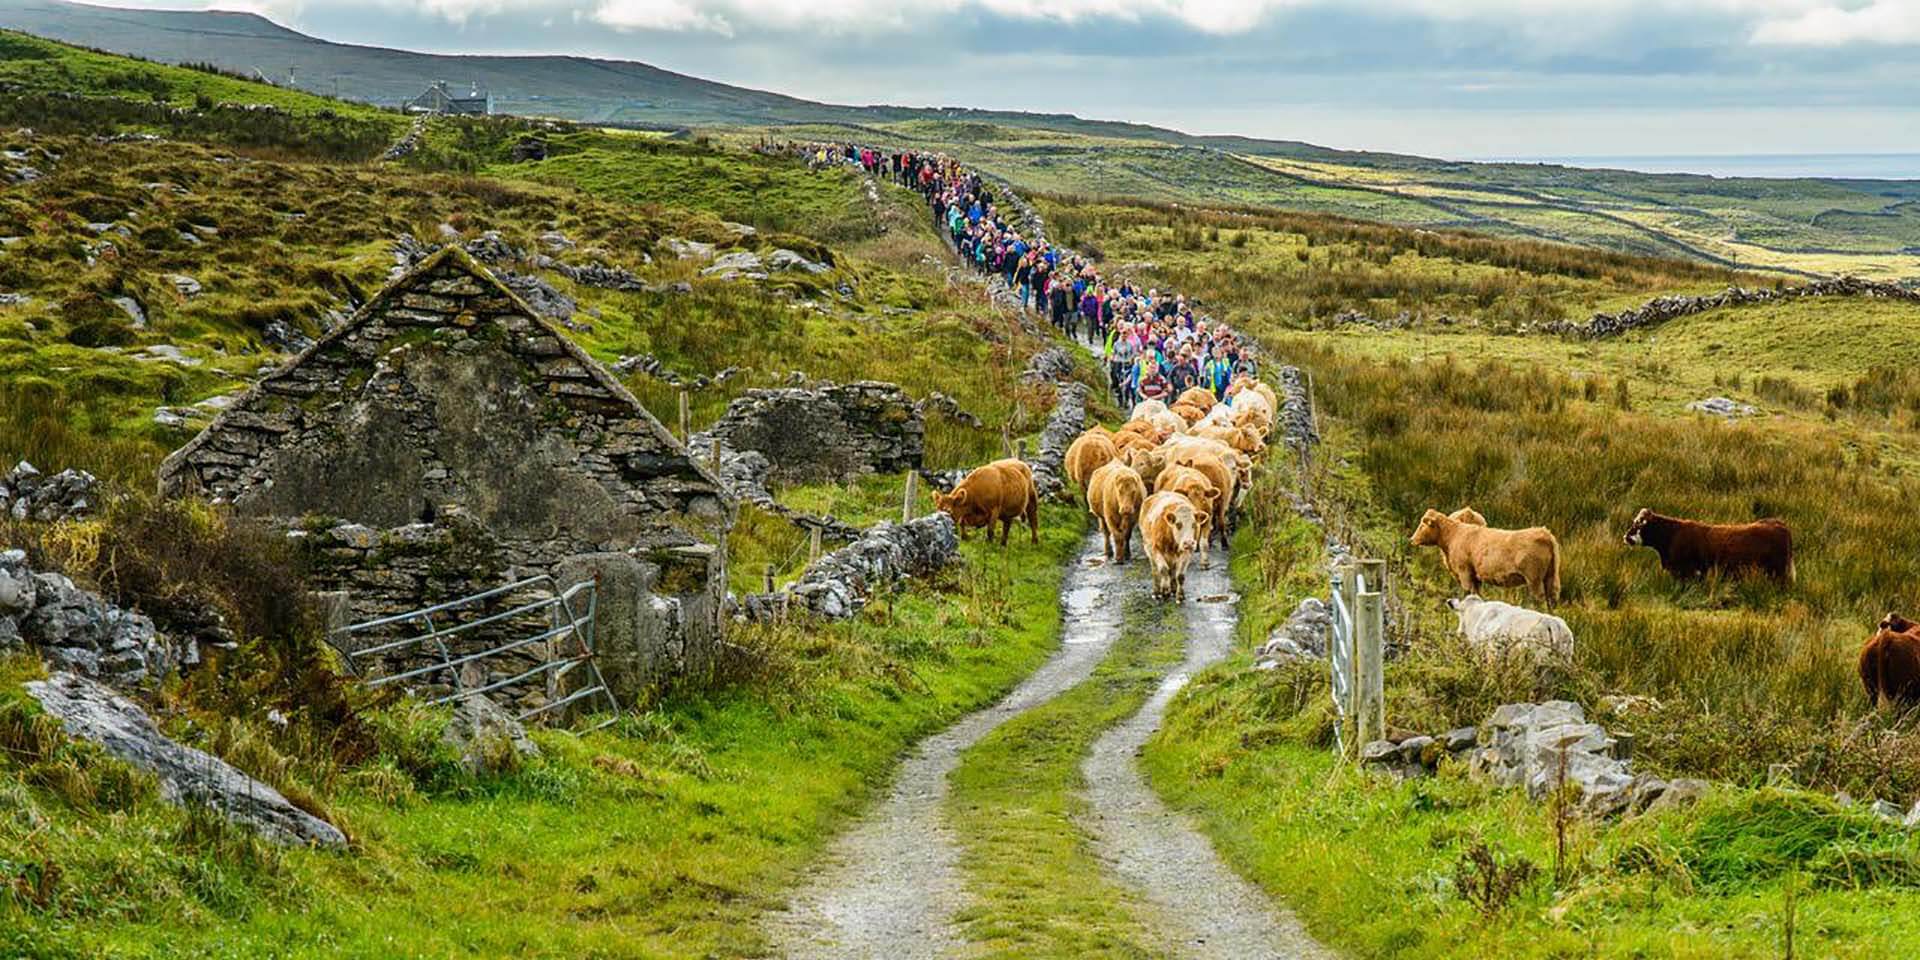 The Burren in Ireland